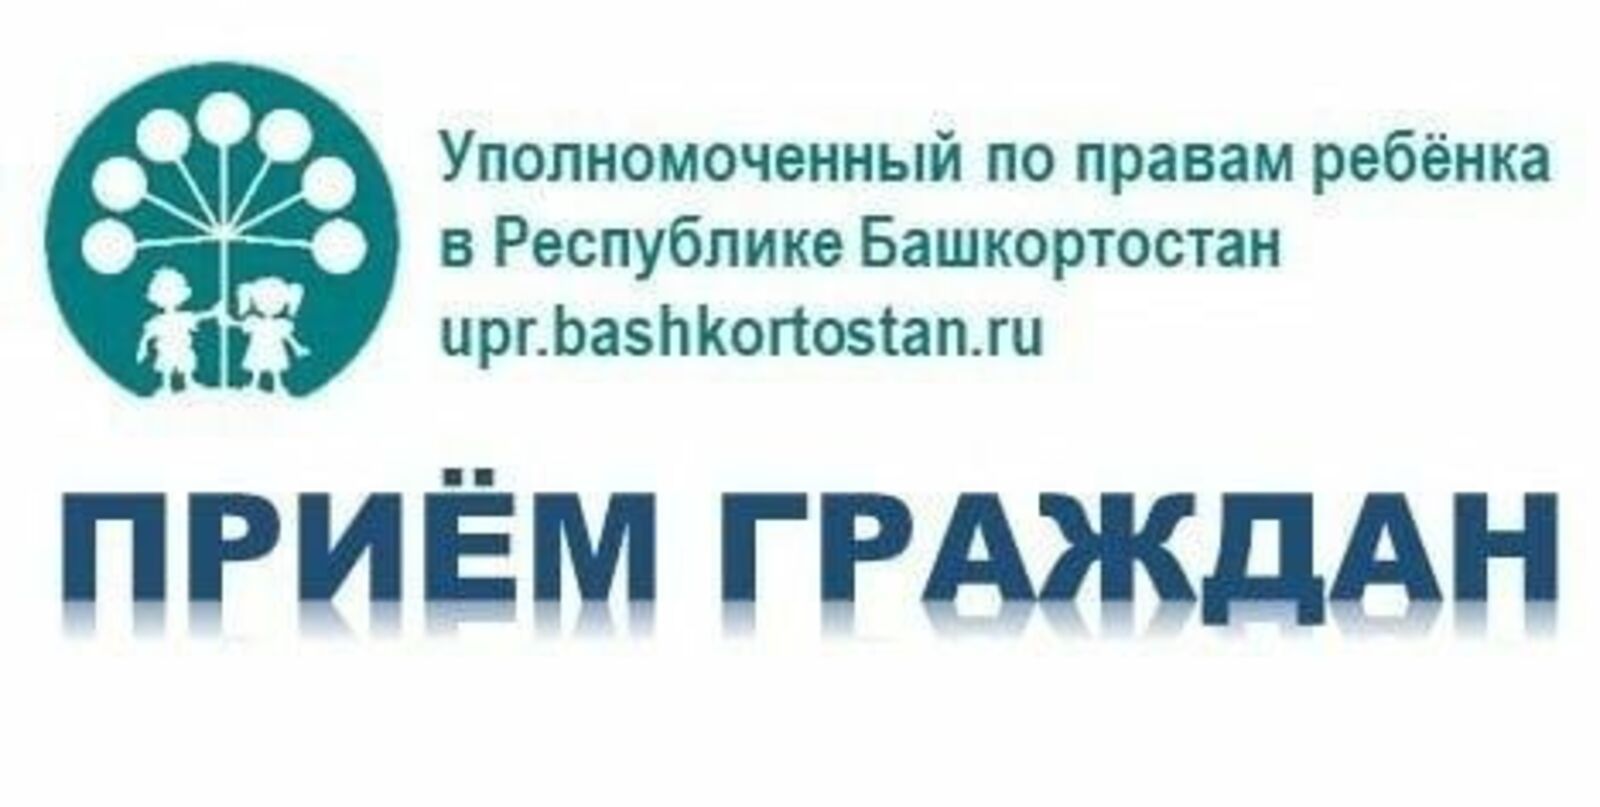 Уполномоченный по правам ребенка в Республике Башкортостан  проведет прием граждан